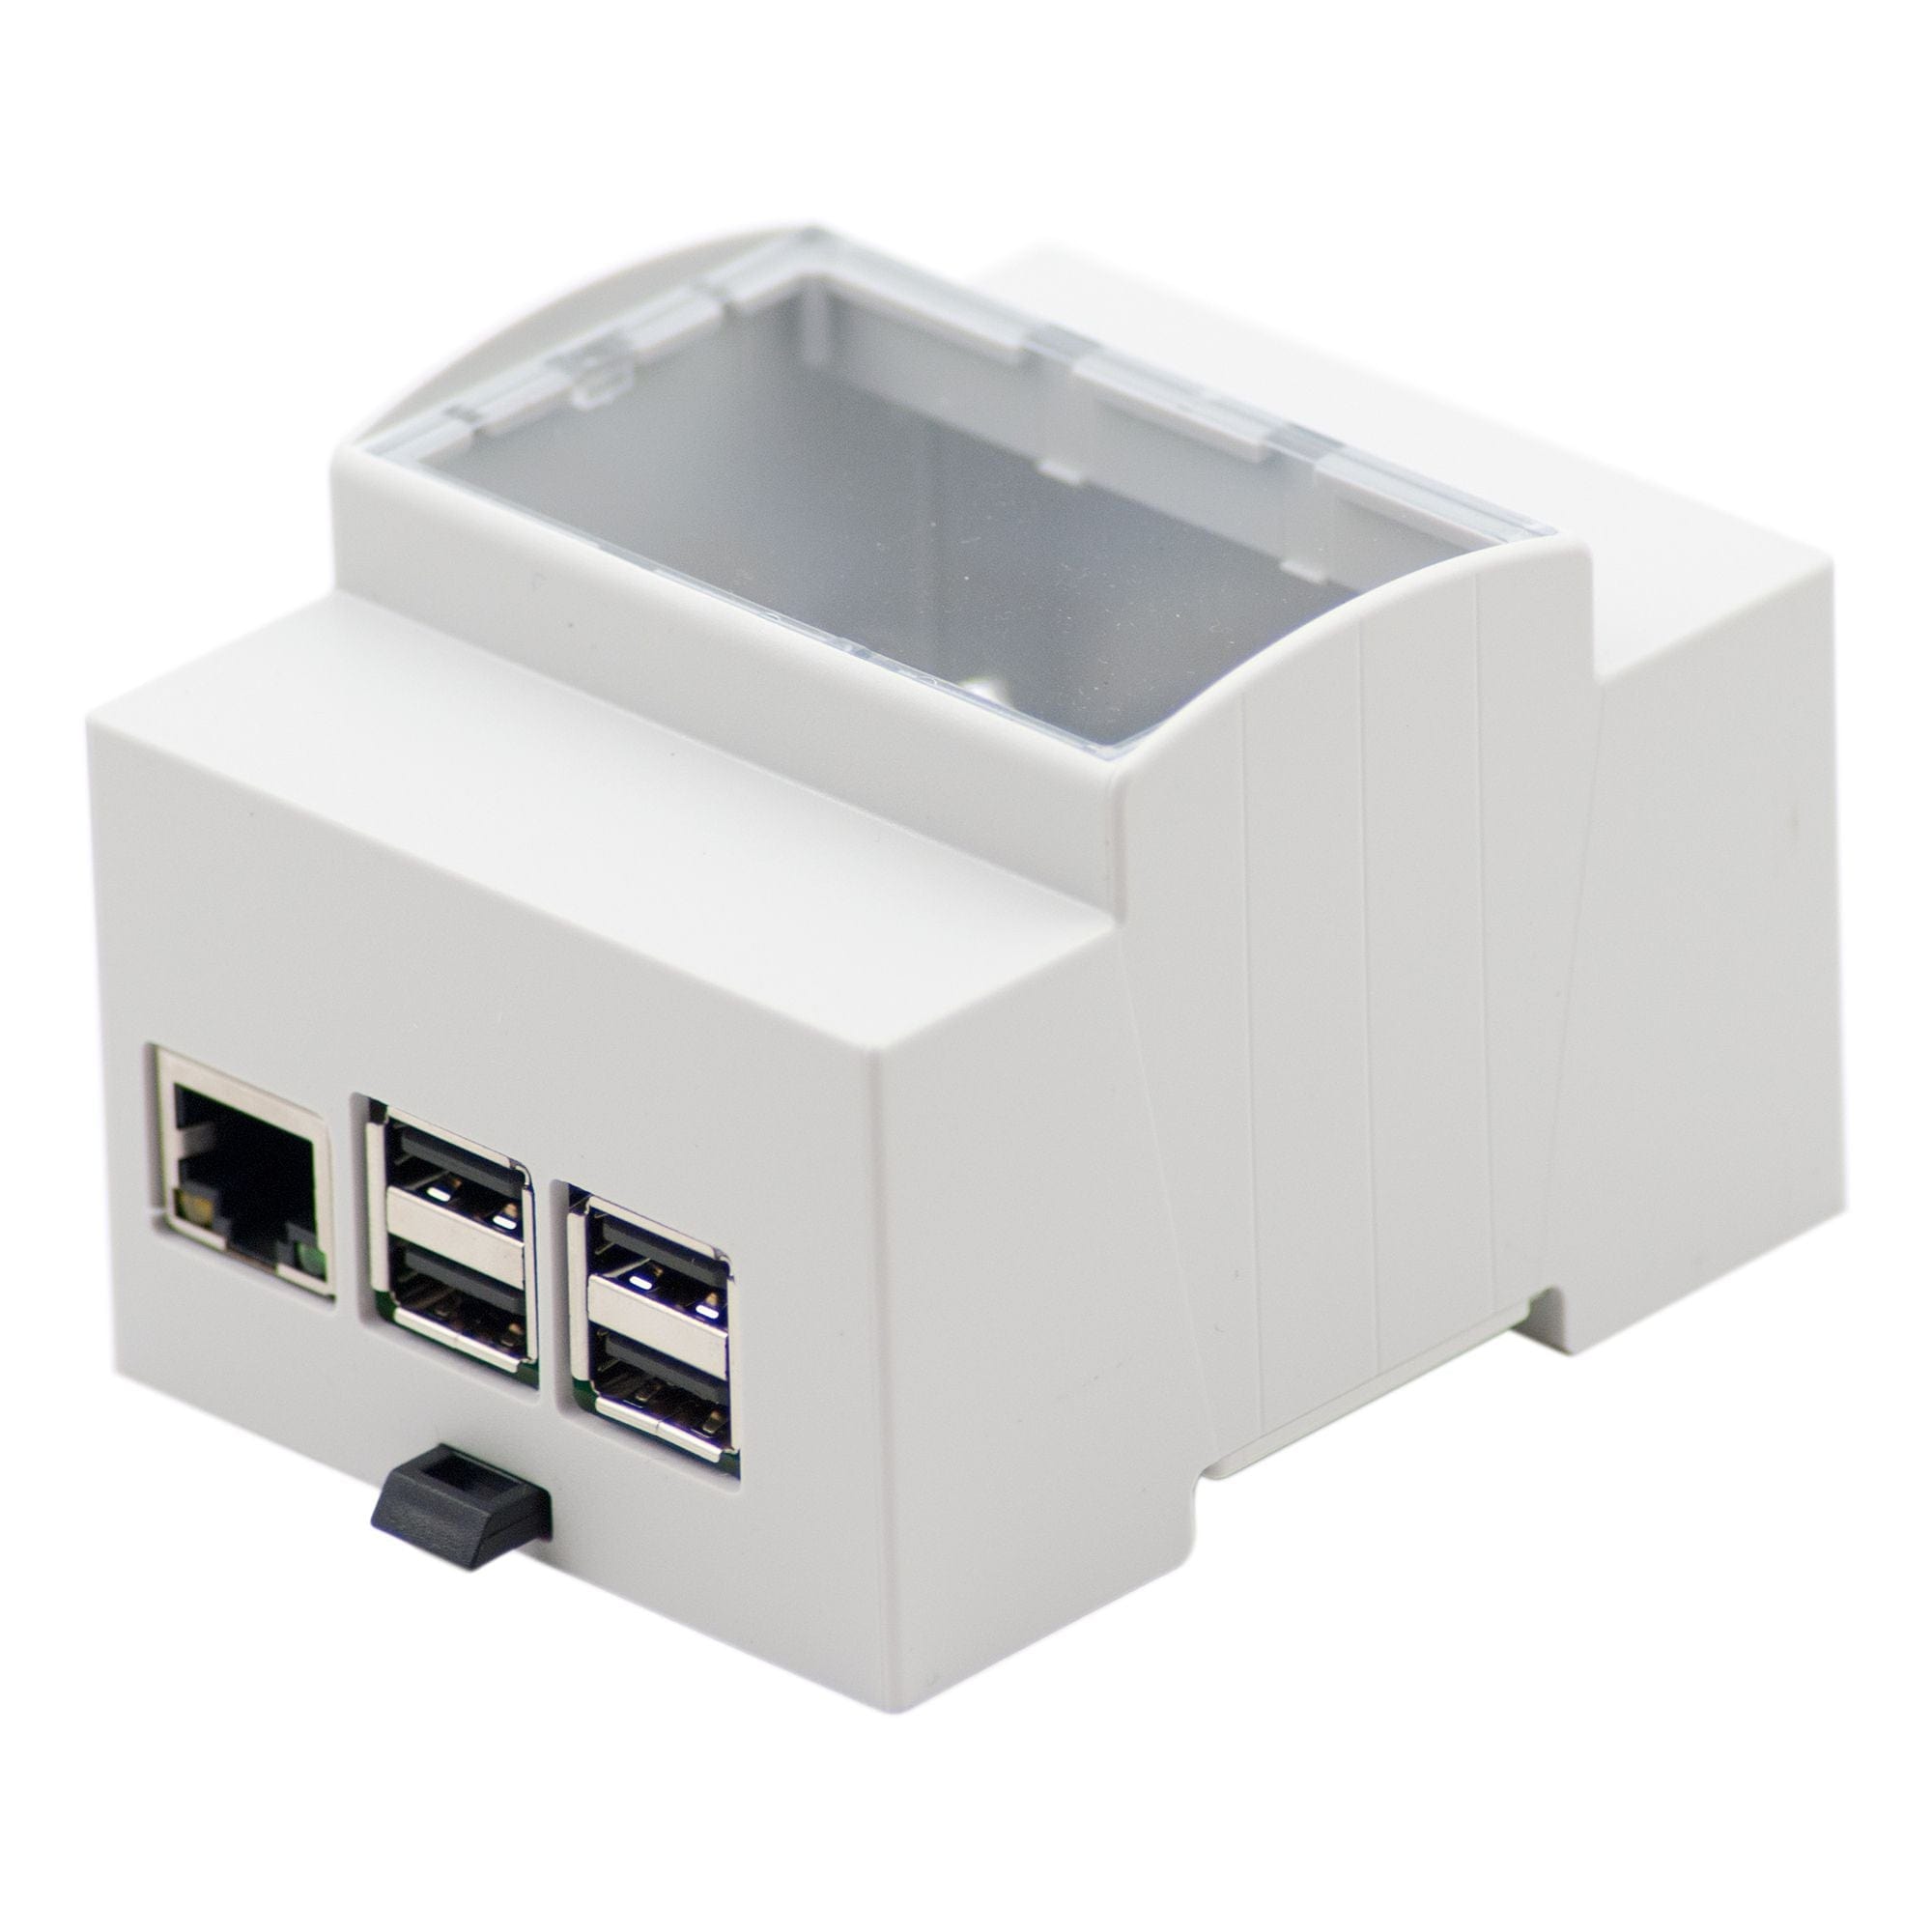 RPI CASE STACK: Boîtier pour Raspberry Pi 3 avec ventilateur, empilable,  transpa chez reichelt elektronik